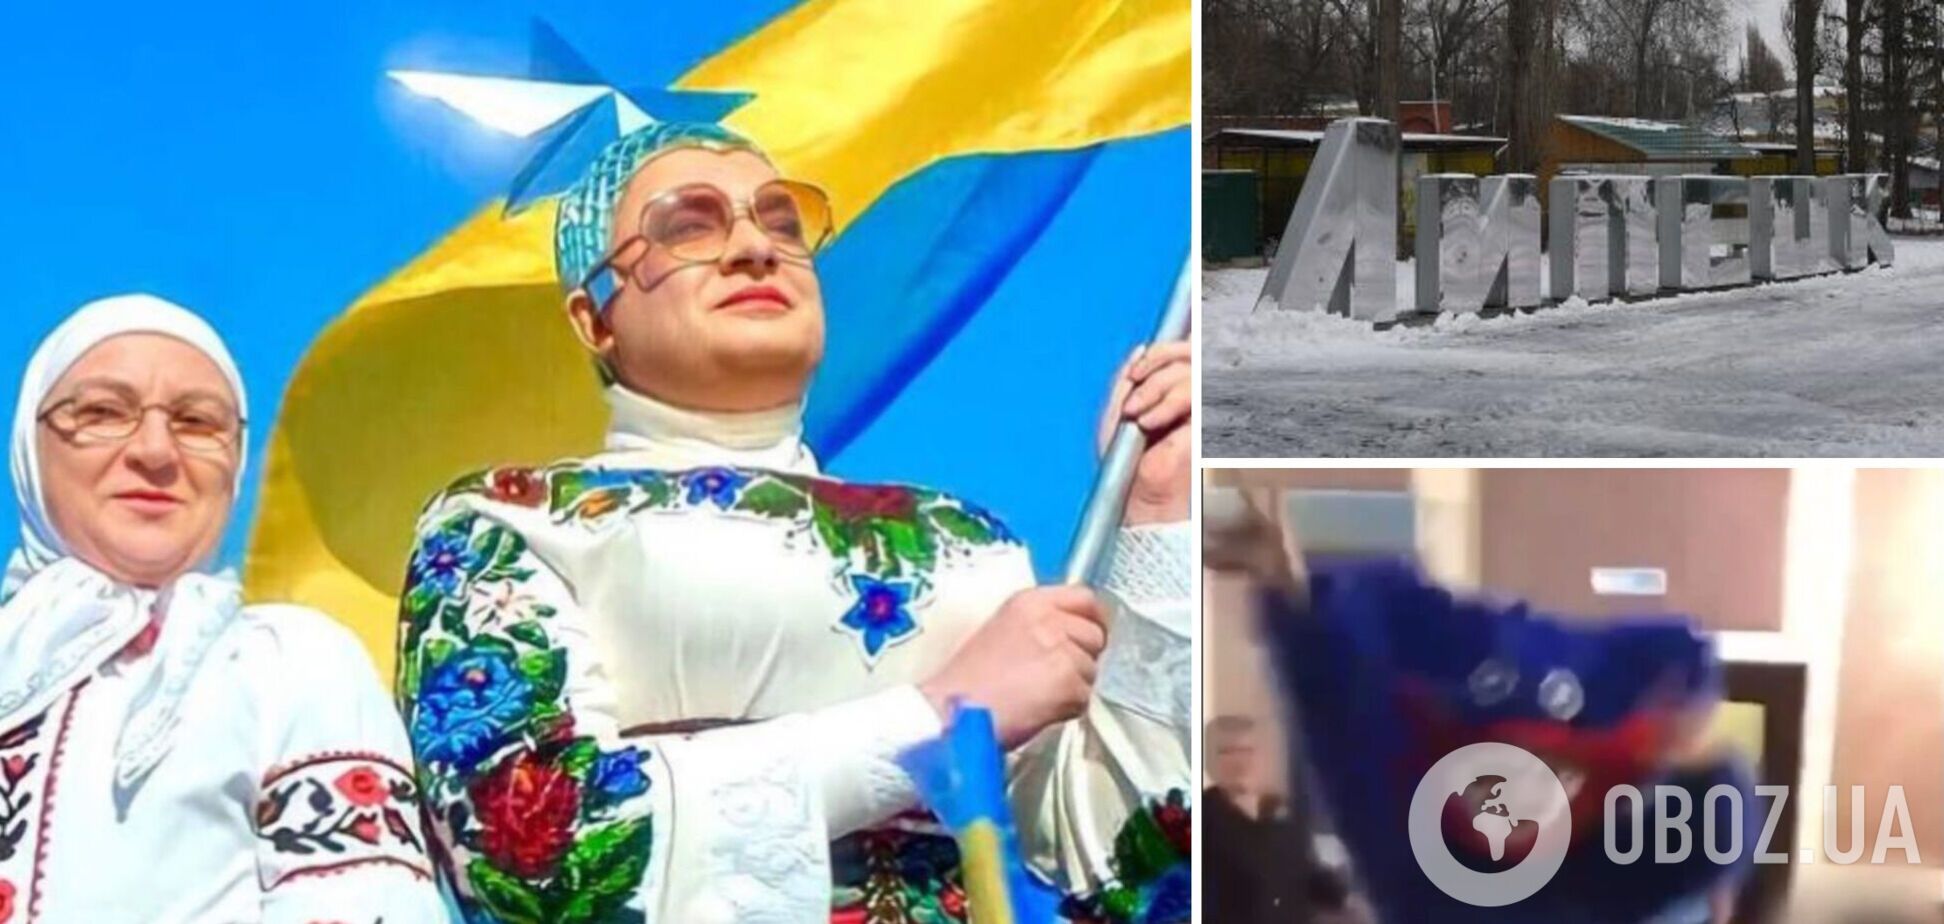 В России вызвали 'на ковер' организатора детского праздника, где танцевали под Верку Сердючку. Видео